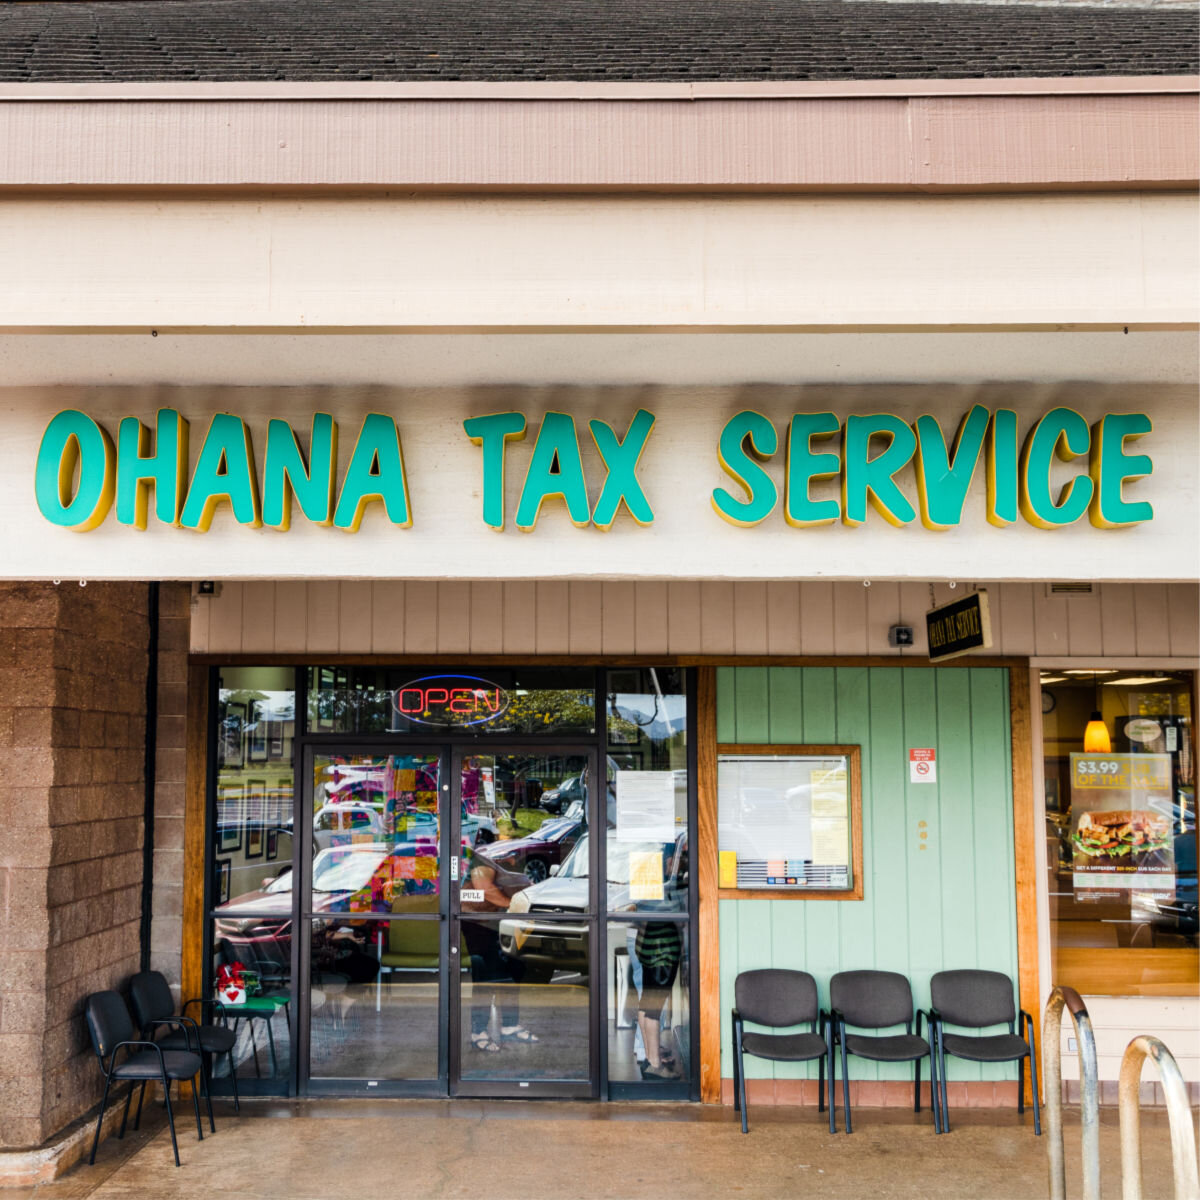 Ohana Tax Service exterior